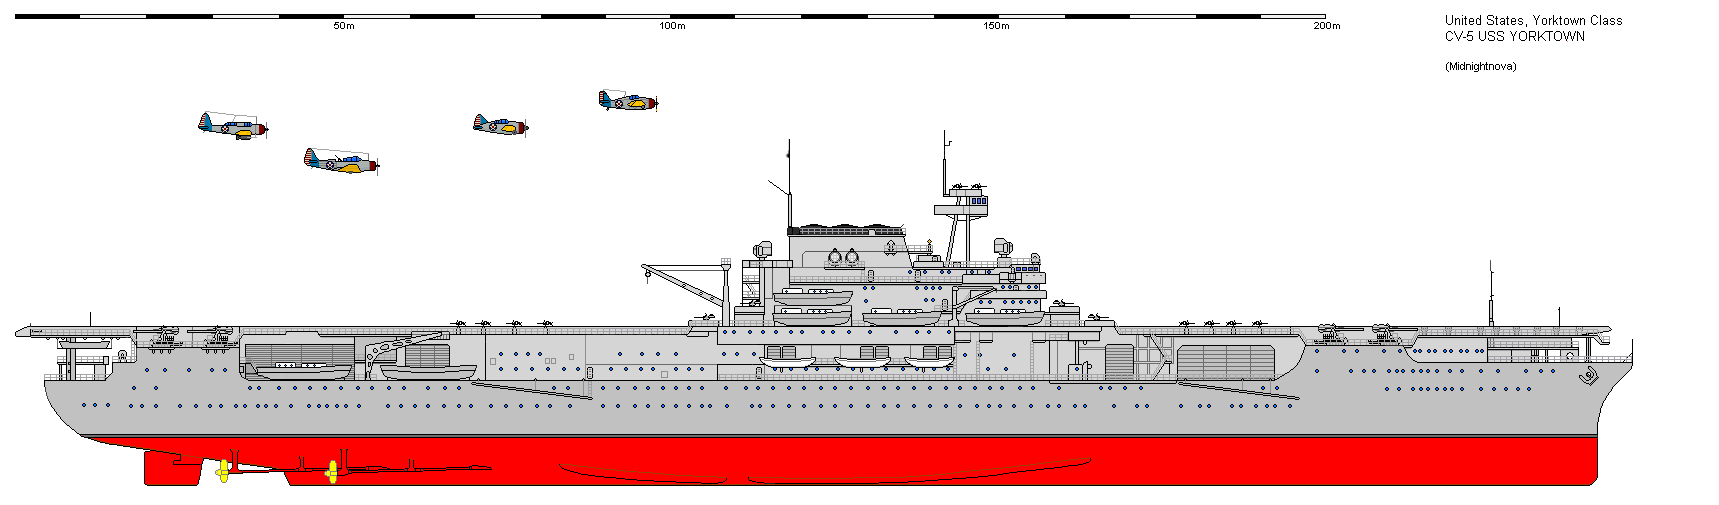 USS Yorktown (CV-5) HD wallpapers, Desktop wallpaper - most viewed